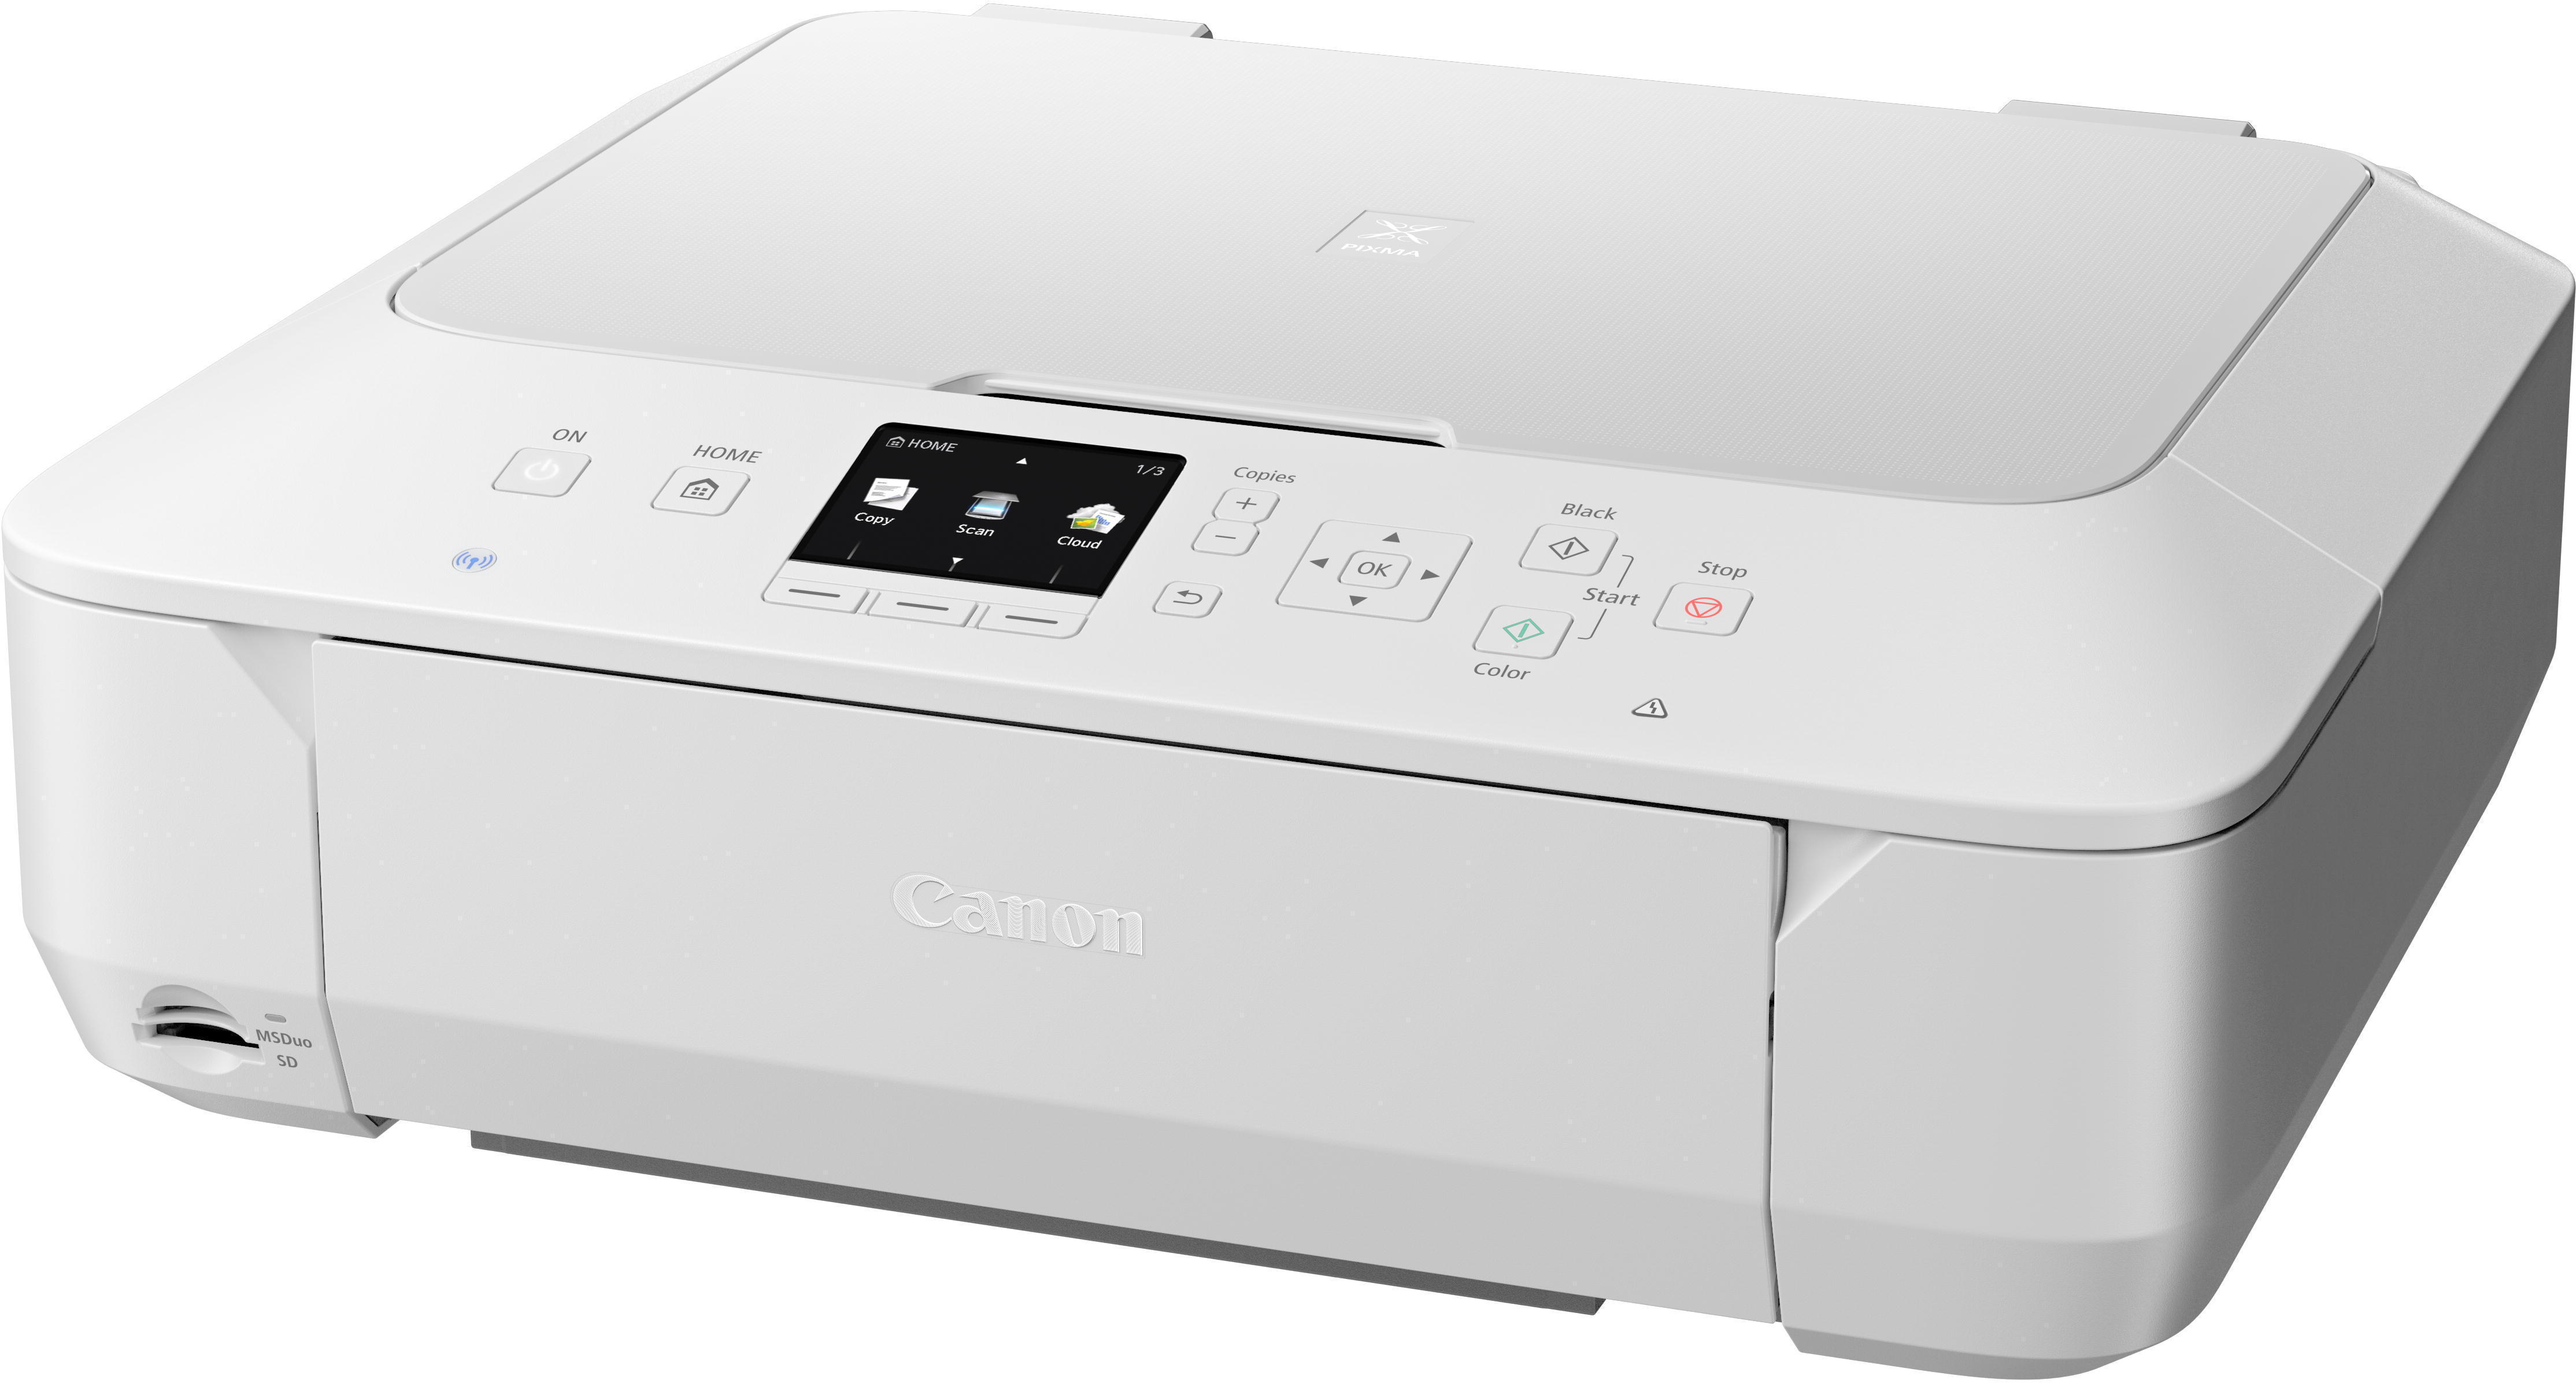 Настройка беспроводного принтера Canon 